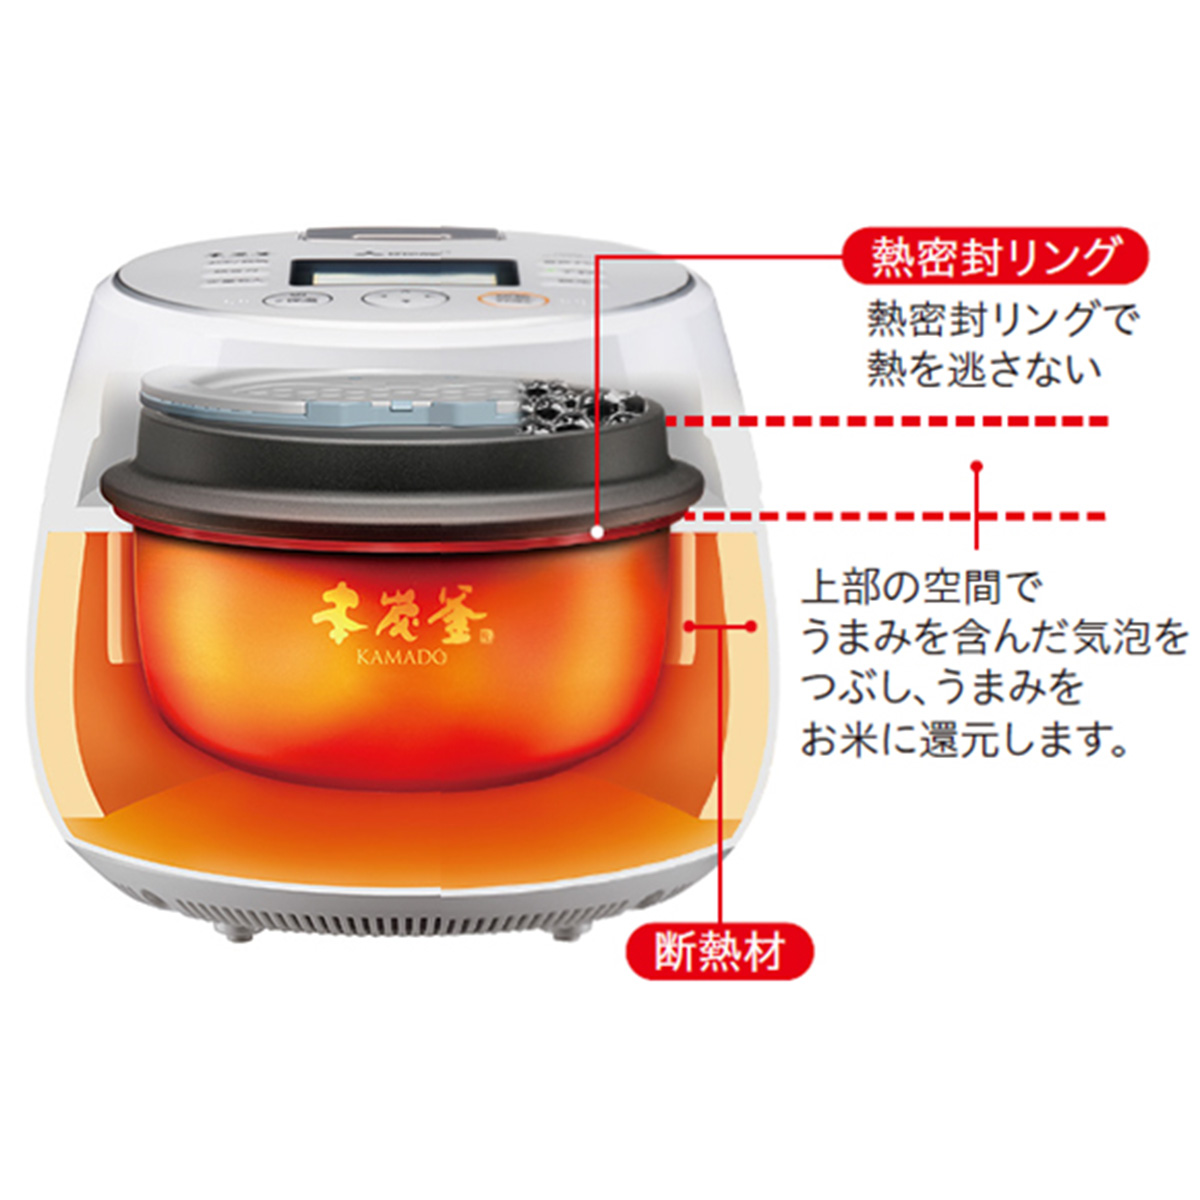 ひかりＴＶショッピング | [20年度 三菱最上位モデル]IH炊飯器 日本製